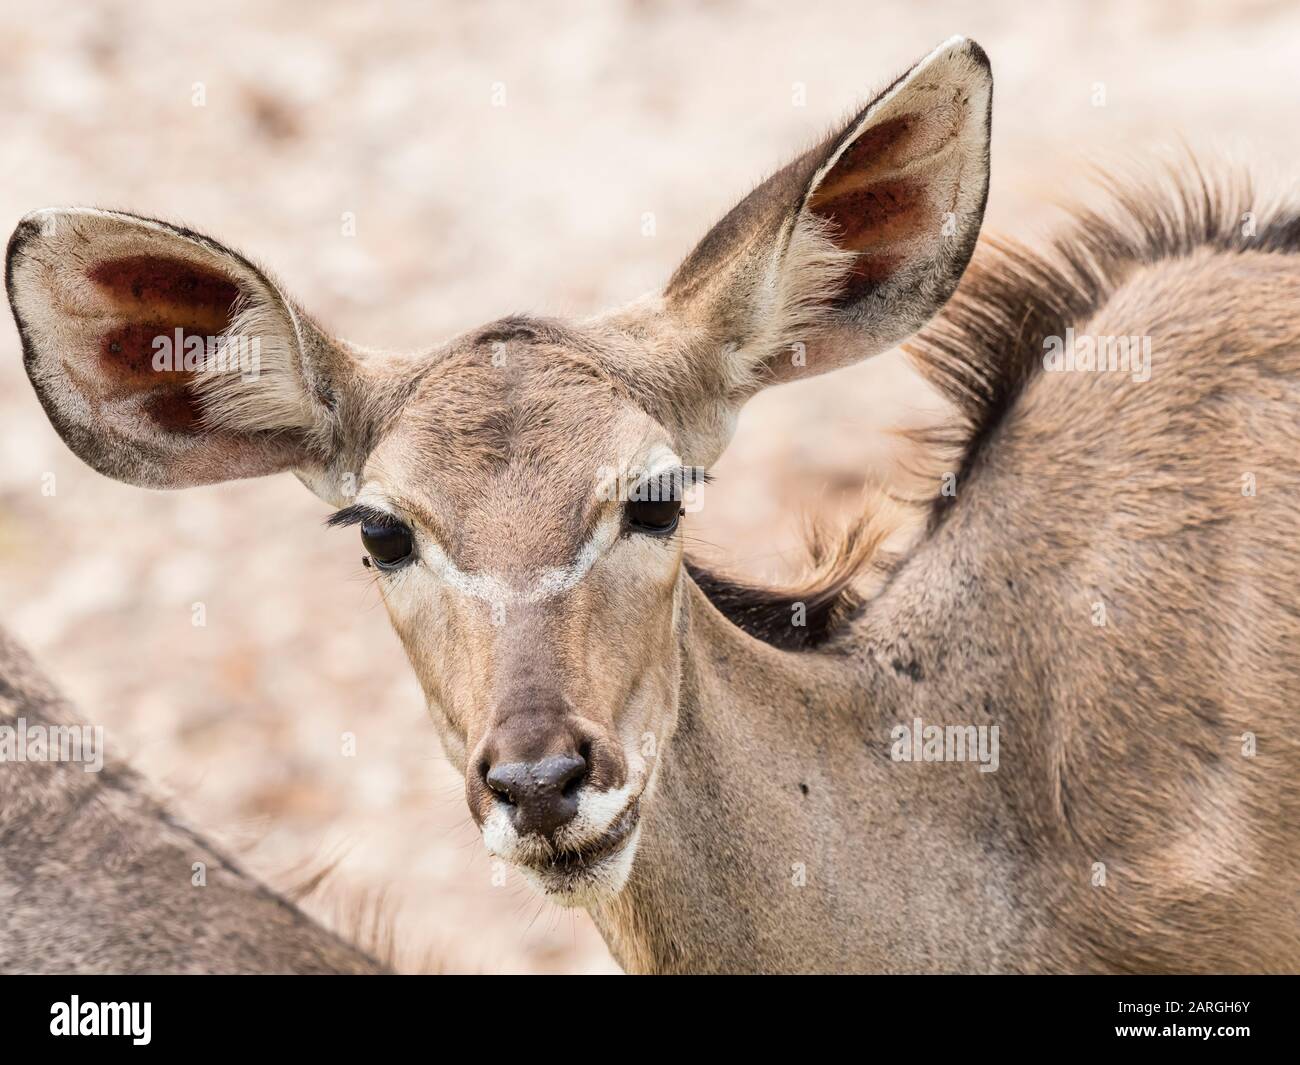 Female greater kudu (Tragelaphus strepsiceros), Chobe National Park, Botswana, Africa Stock Photo